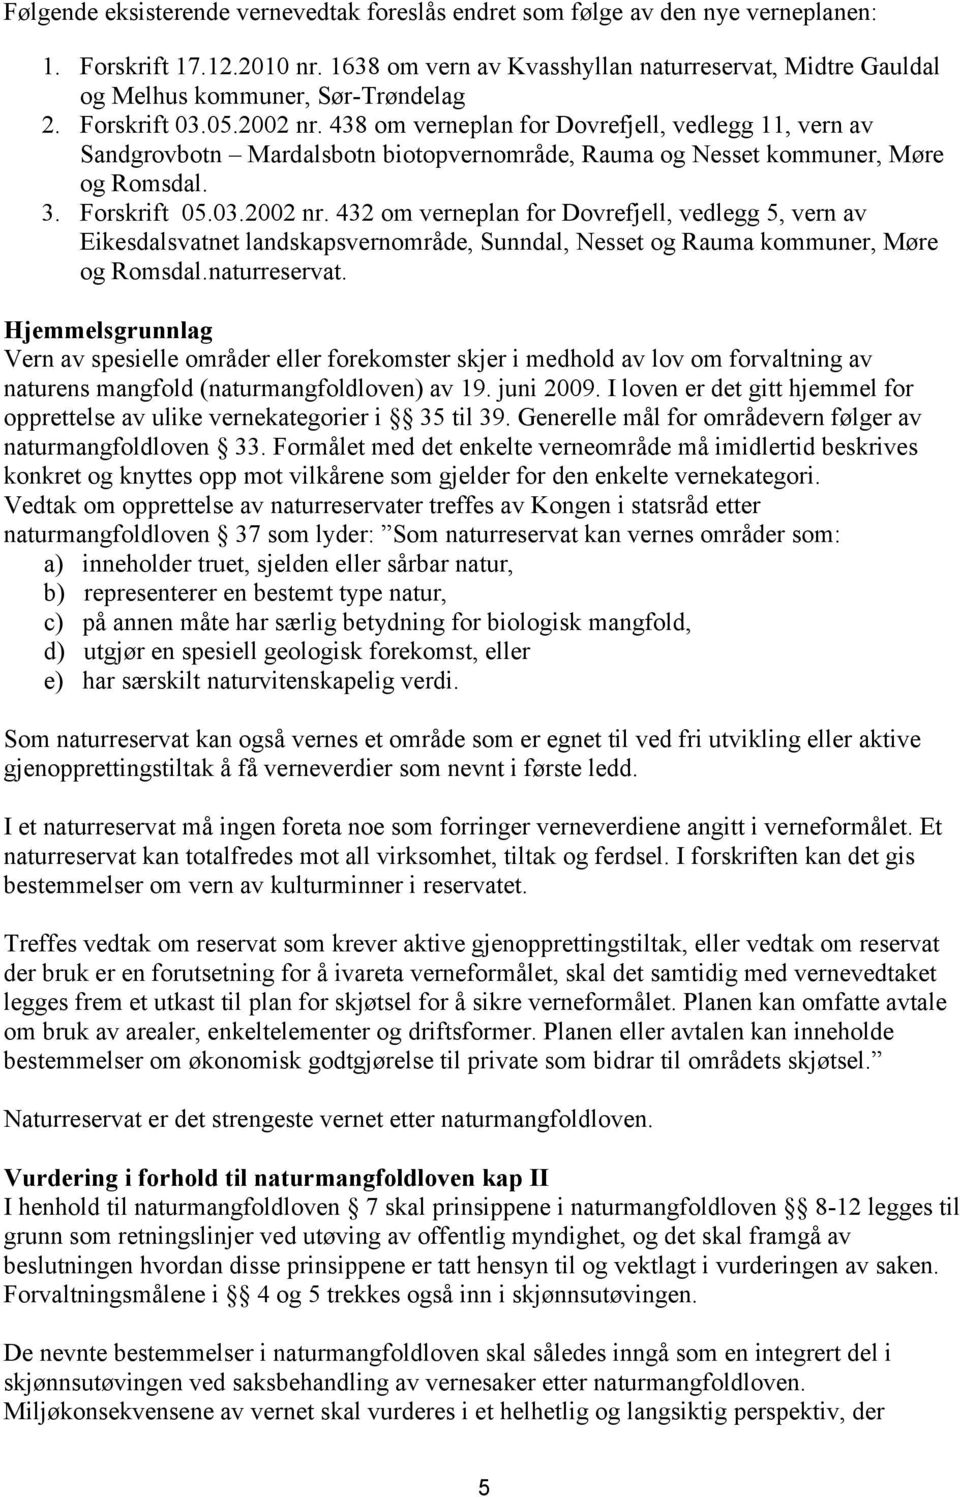 438 om verneplan for Dovrefjell, vedlegg 11, vern av Sandgrovbotn Mardalsbotn biotopvernområde, Rauma og Nesset kommuner, Møre og Romsdal. 3. Forskrift 05.03.2002 nr.